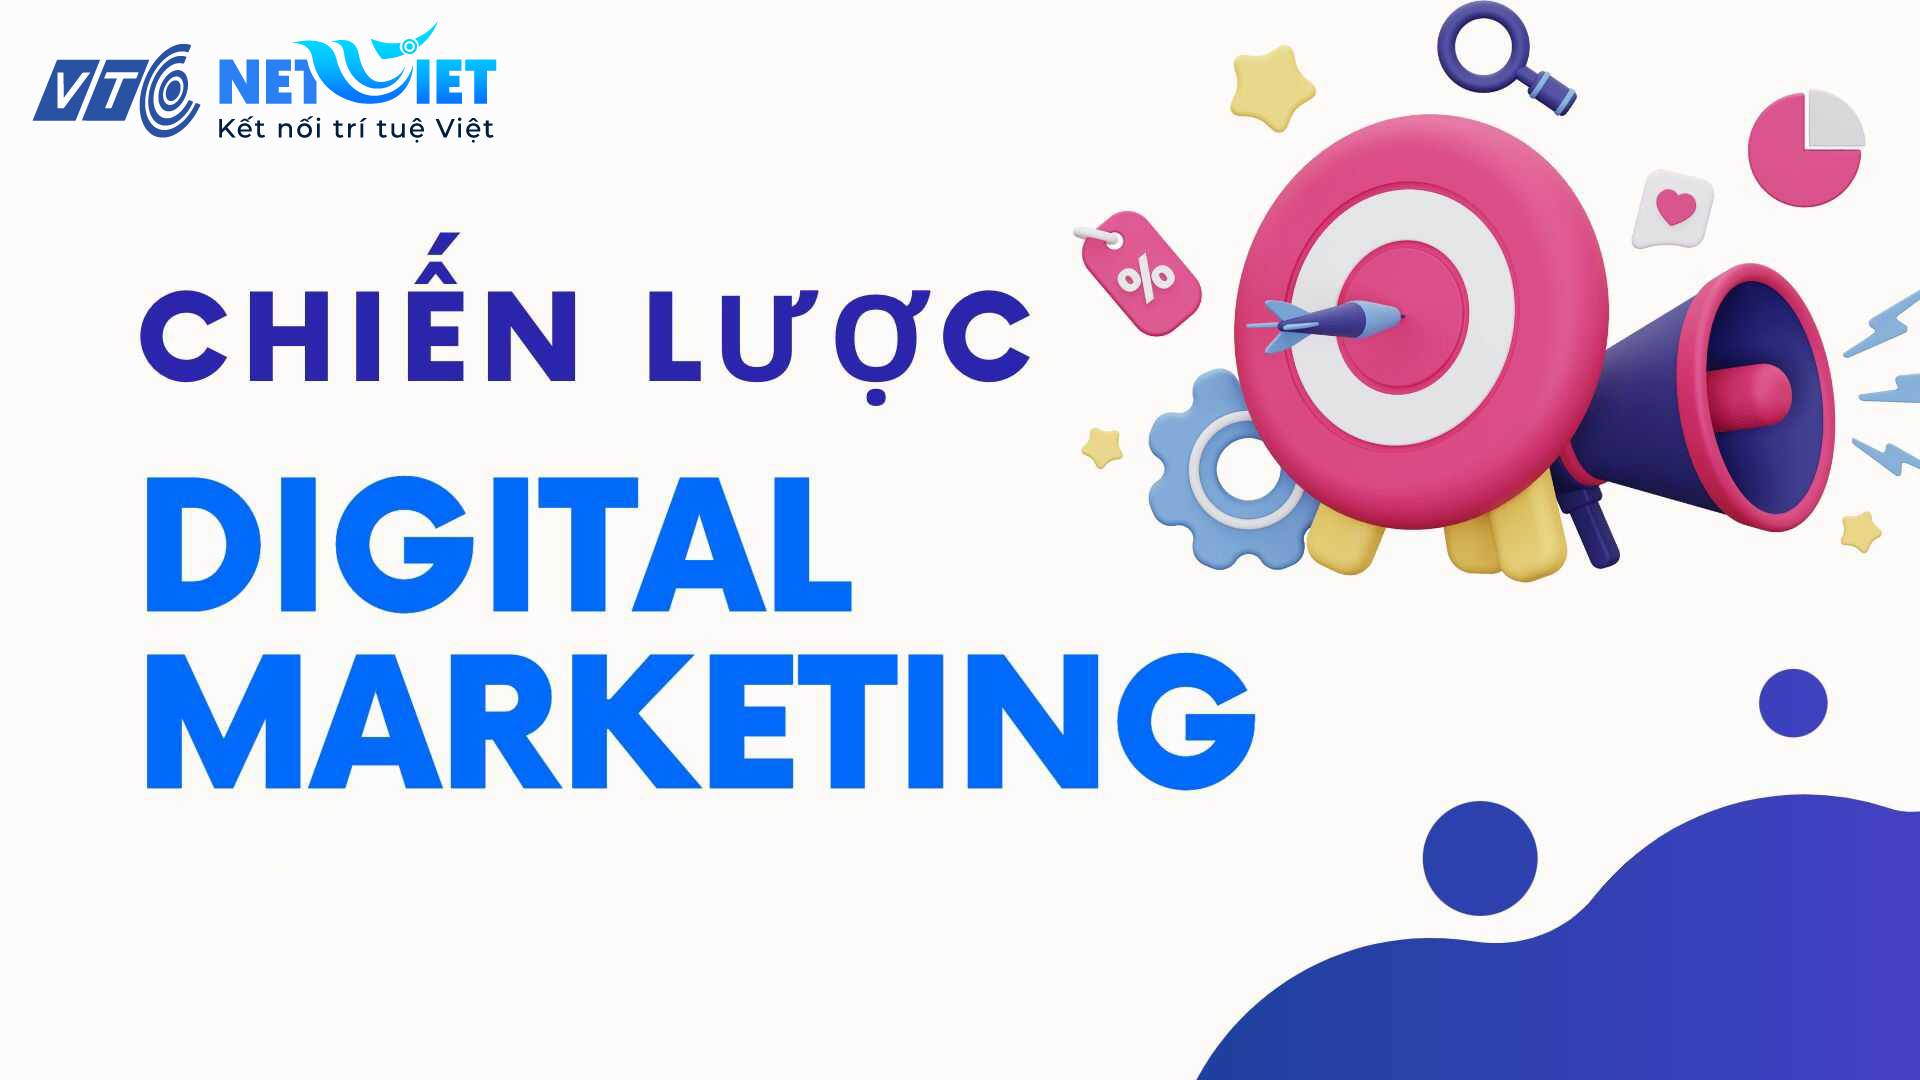 Chiến lược Digital Marketing là gì?